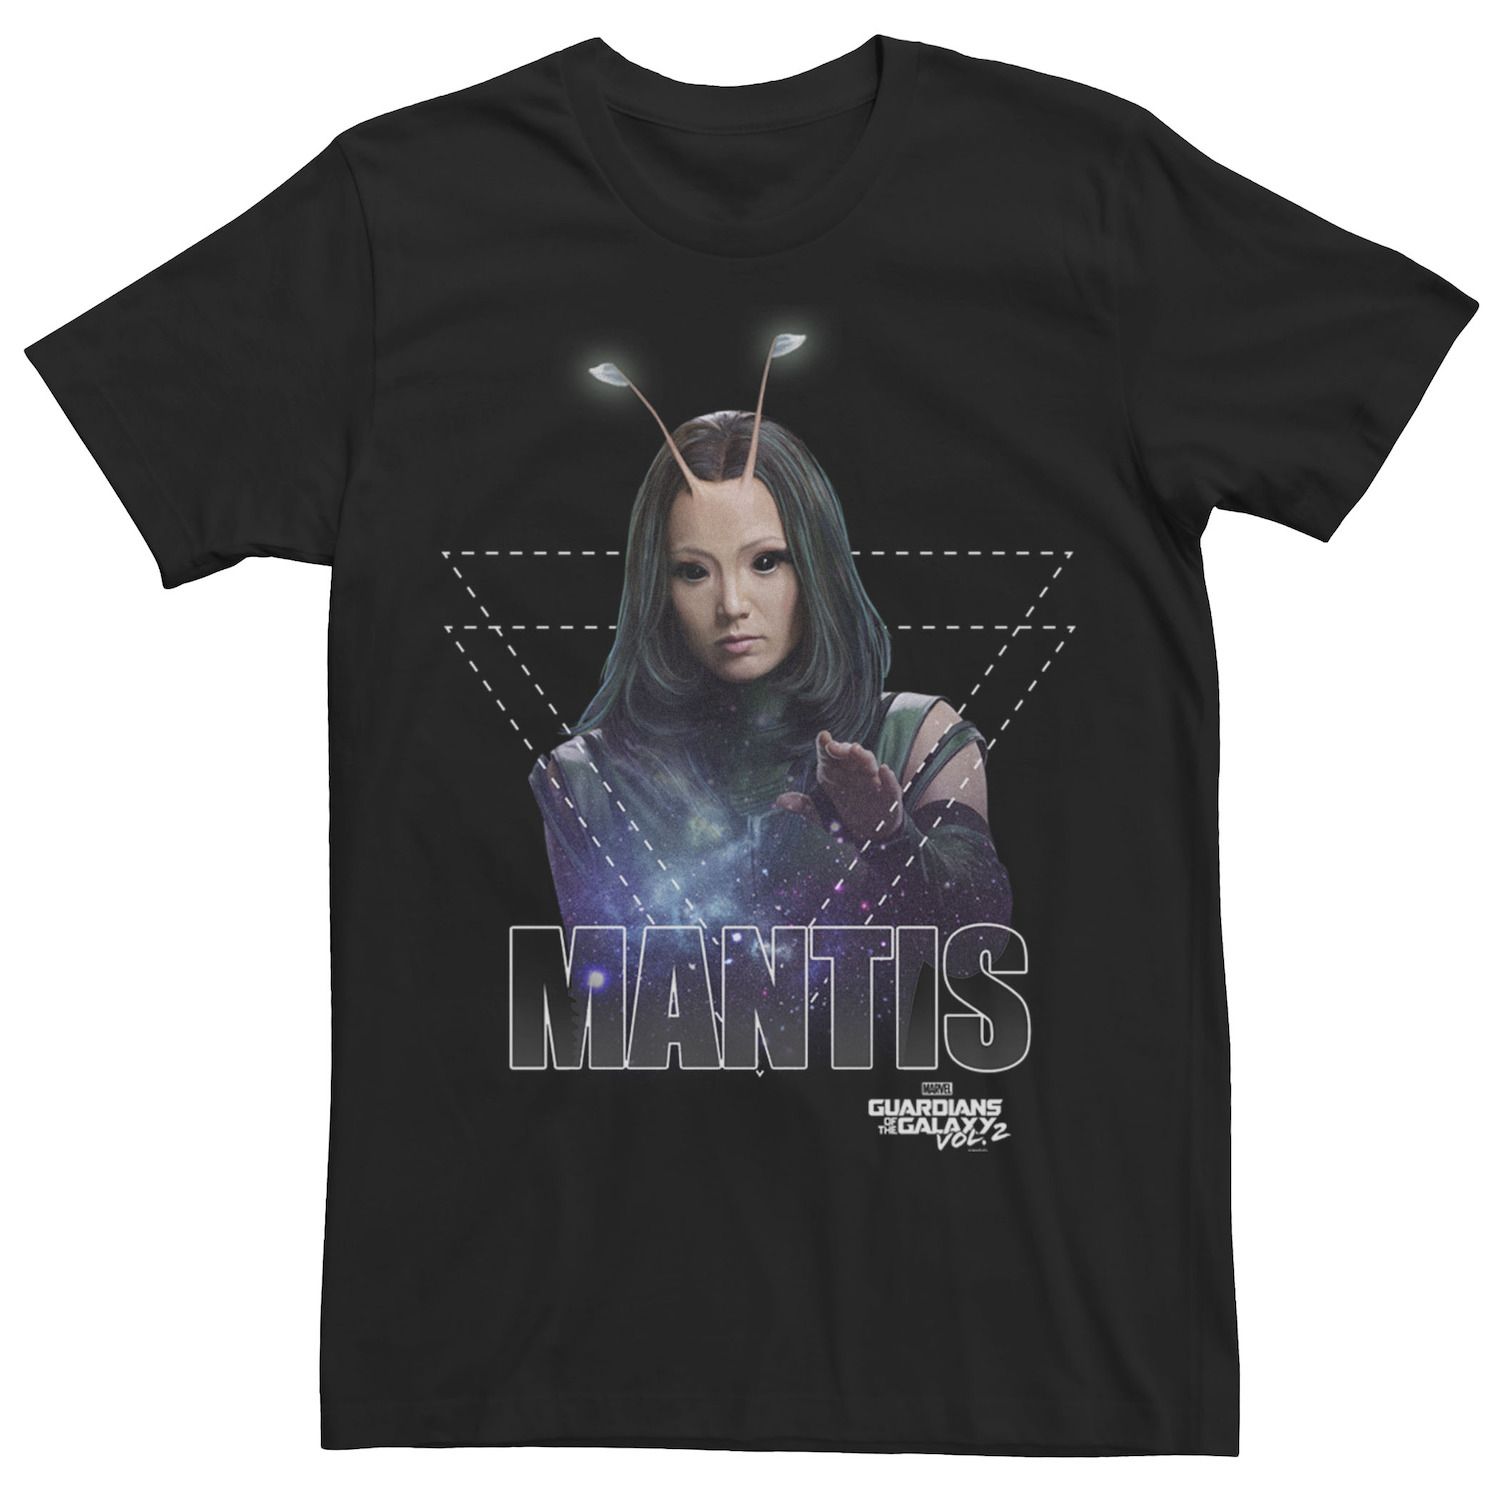 Мужская футболка с геометрическим рисунком GOTG Mantis, бюстом и портретом Marvel поло marvel gotg rocket racoon